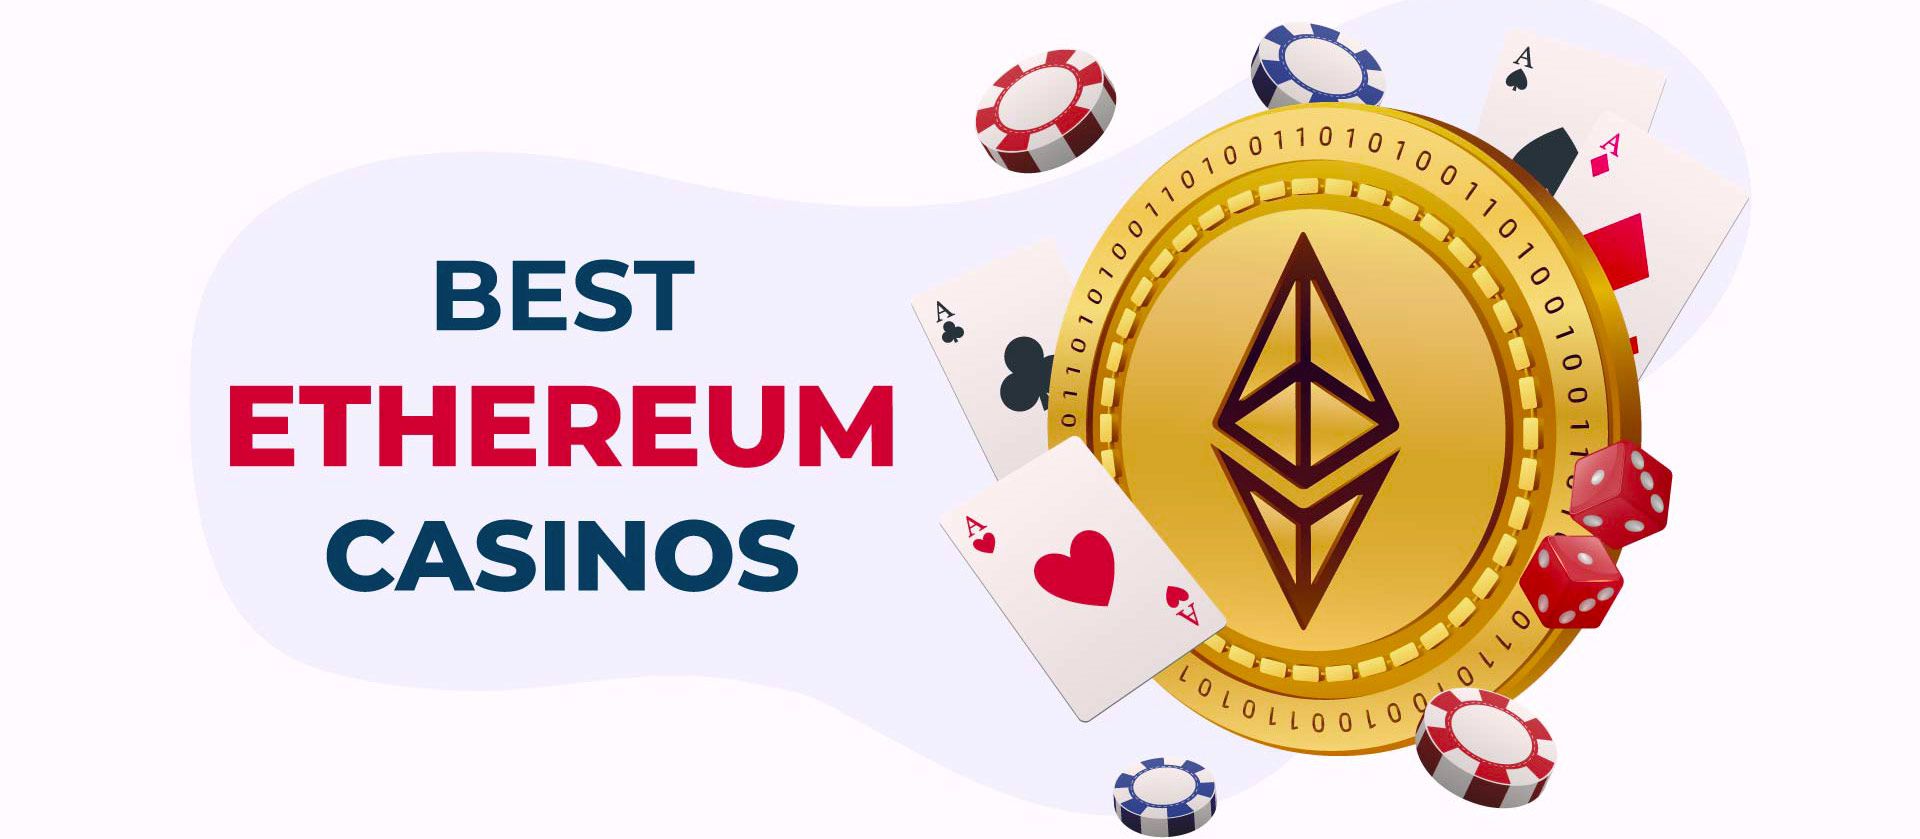 Best Ethereum casinos in Canada.